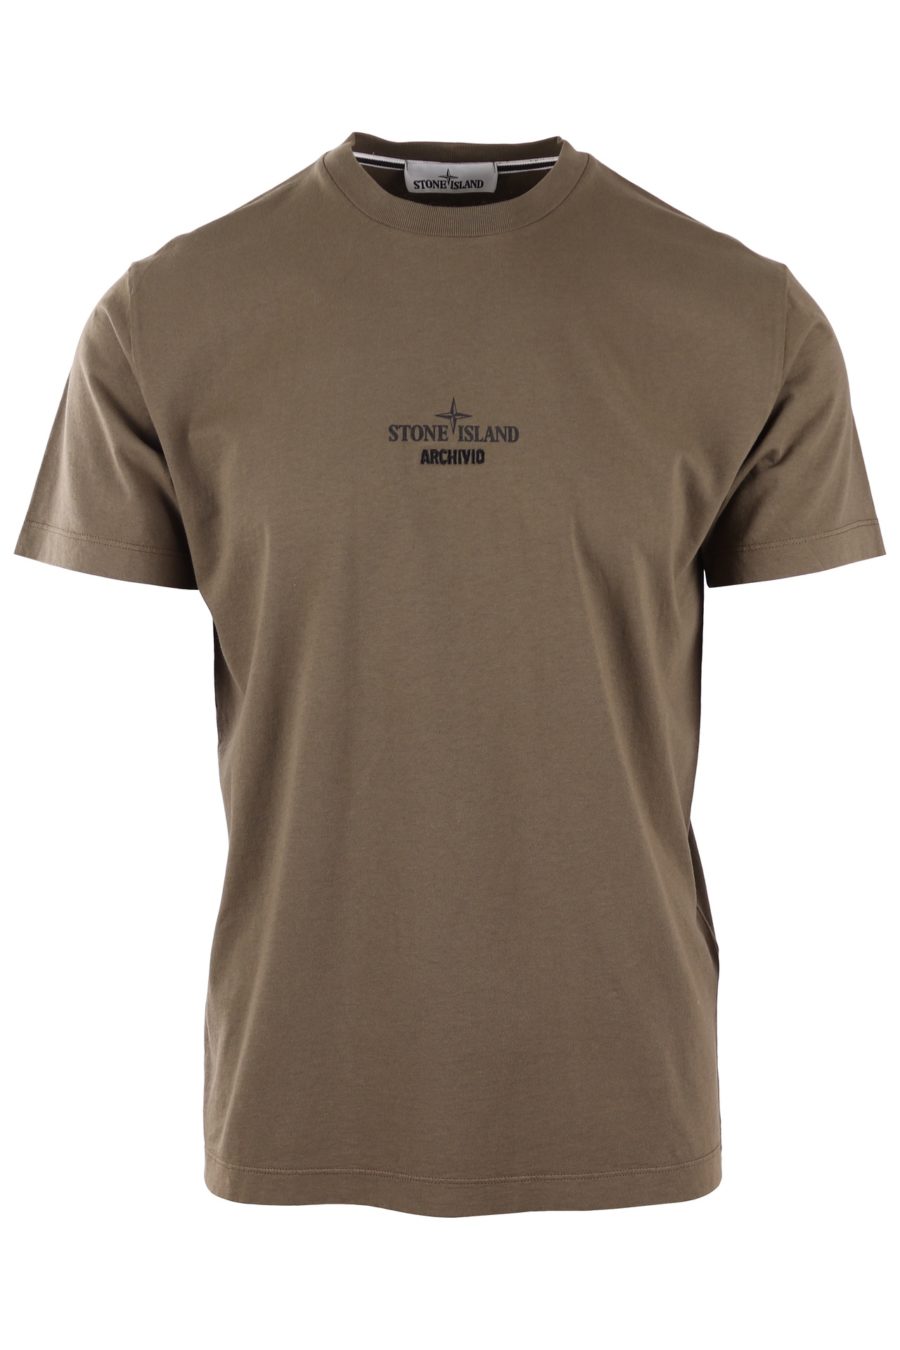 T-shirt Stone Island verde militar com logótipo "archivio" - 8dc94f6327d3864625f3278522f969706e822ce7